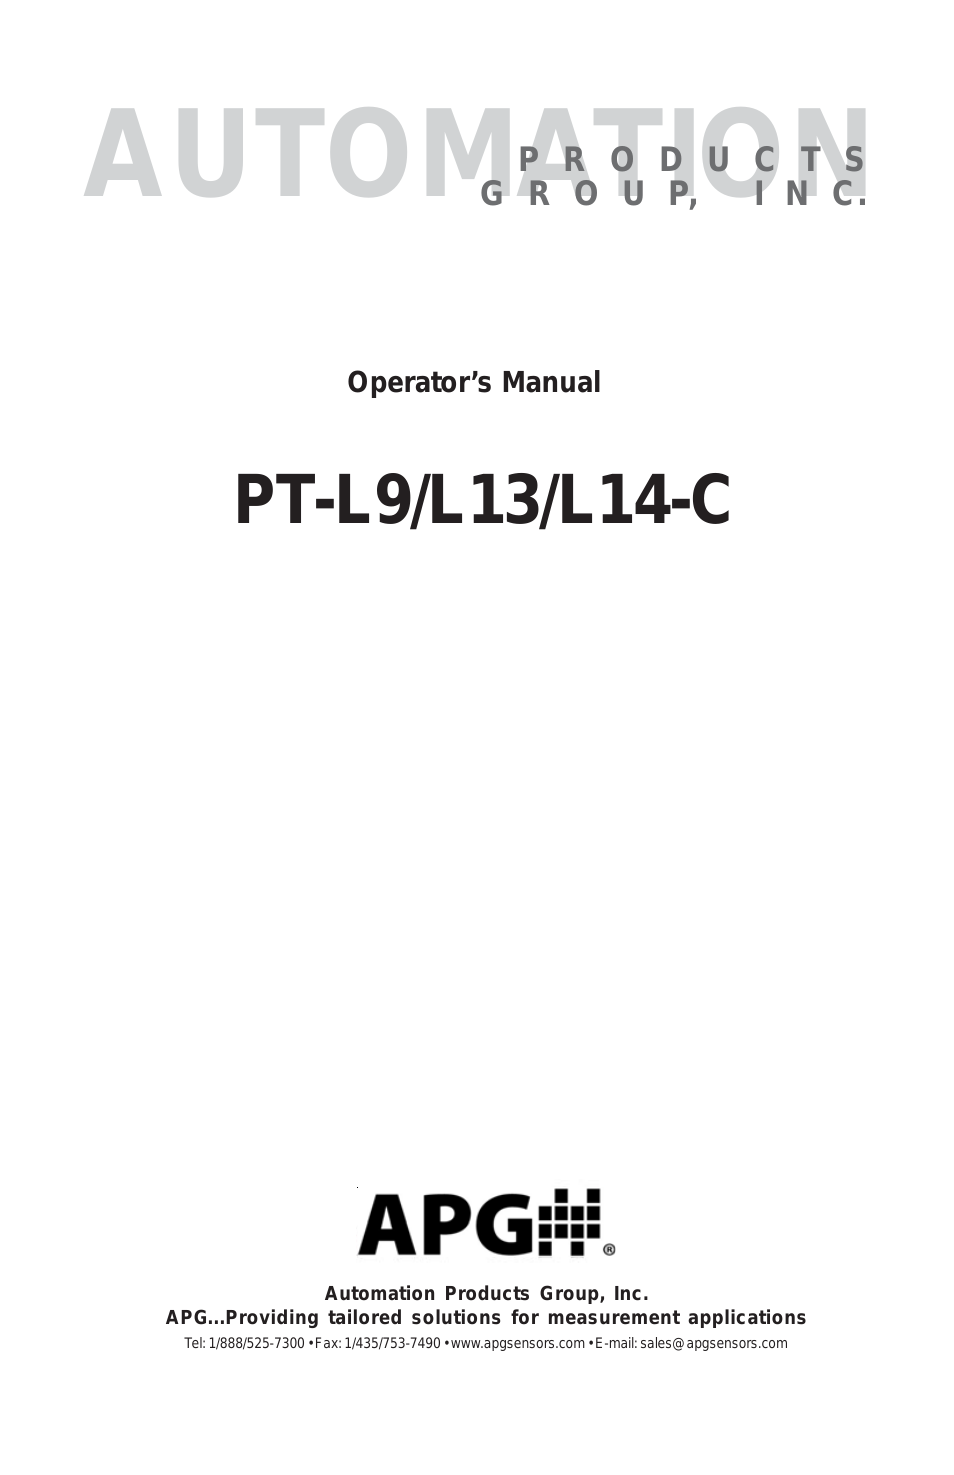 PT-L9 user manual